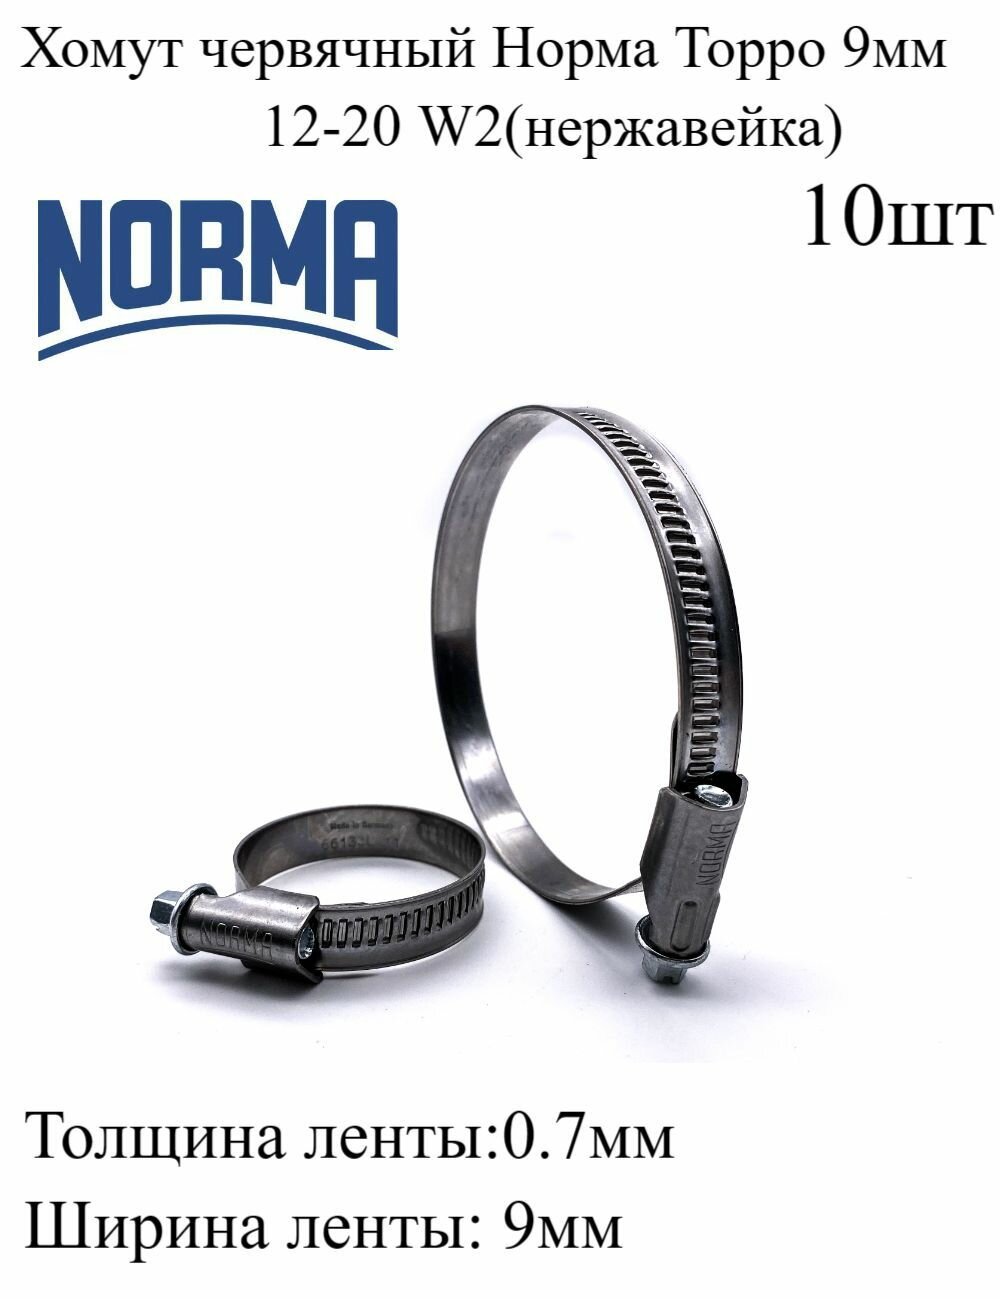 Хомут стяжной червячный для шланга Норма Торро 12-20 9мм W2 нержавеющий, металлический, винтовой, 10шт